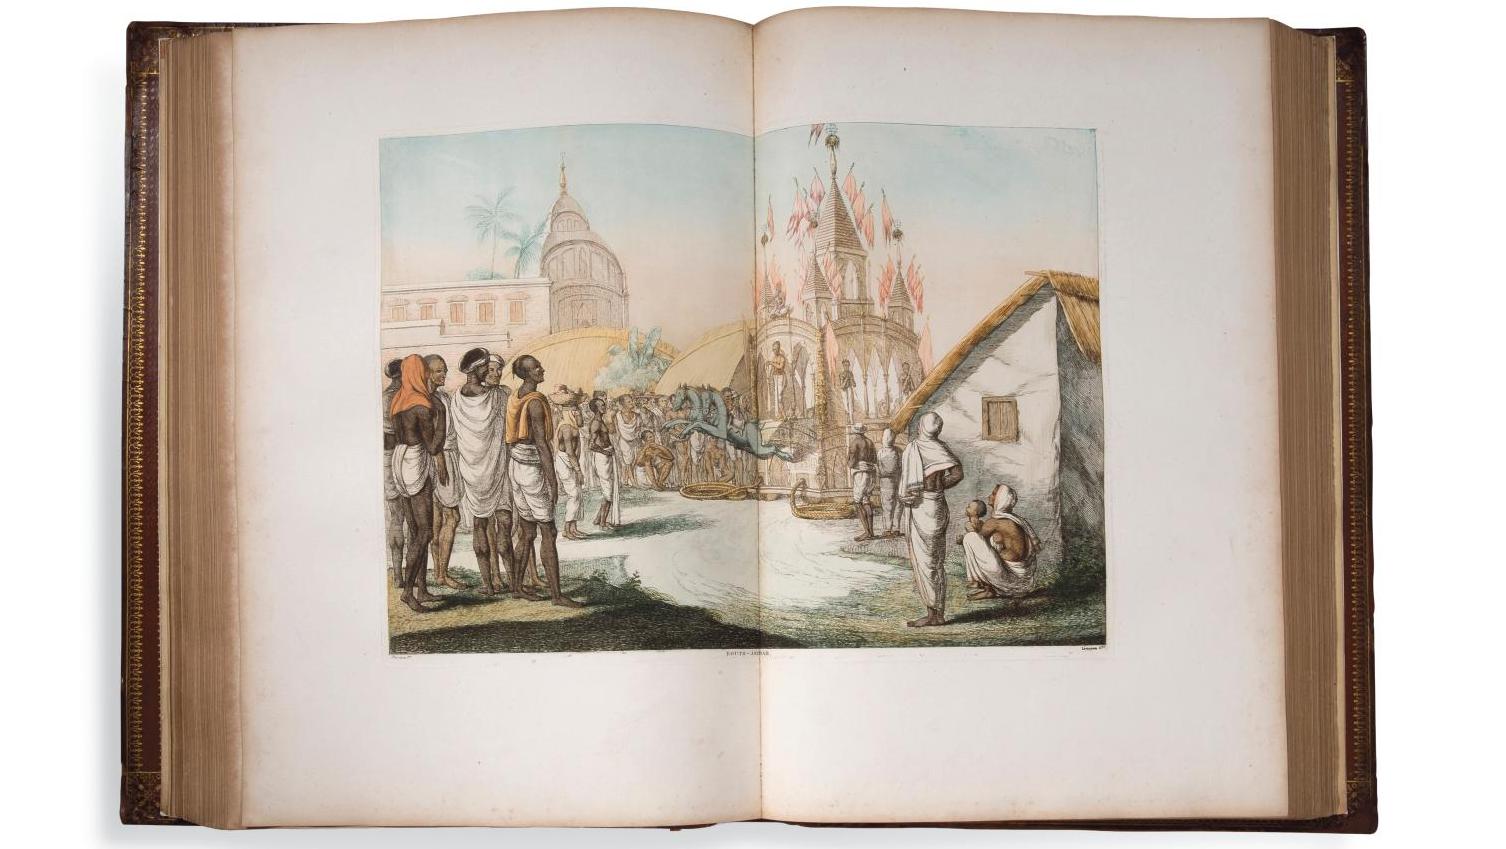 Frans Balthazar Solvyns (1760-1824), Les Hindoûs ou Description de leurs mœurs, coutumes... L’Inde vue par Frans Balthazar Solvyns